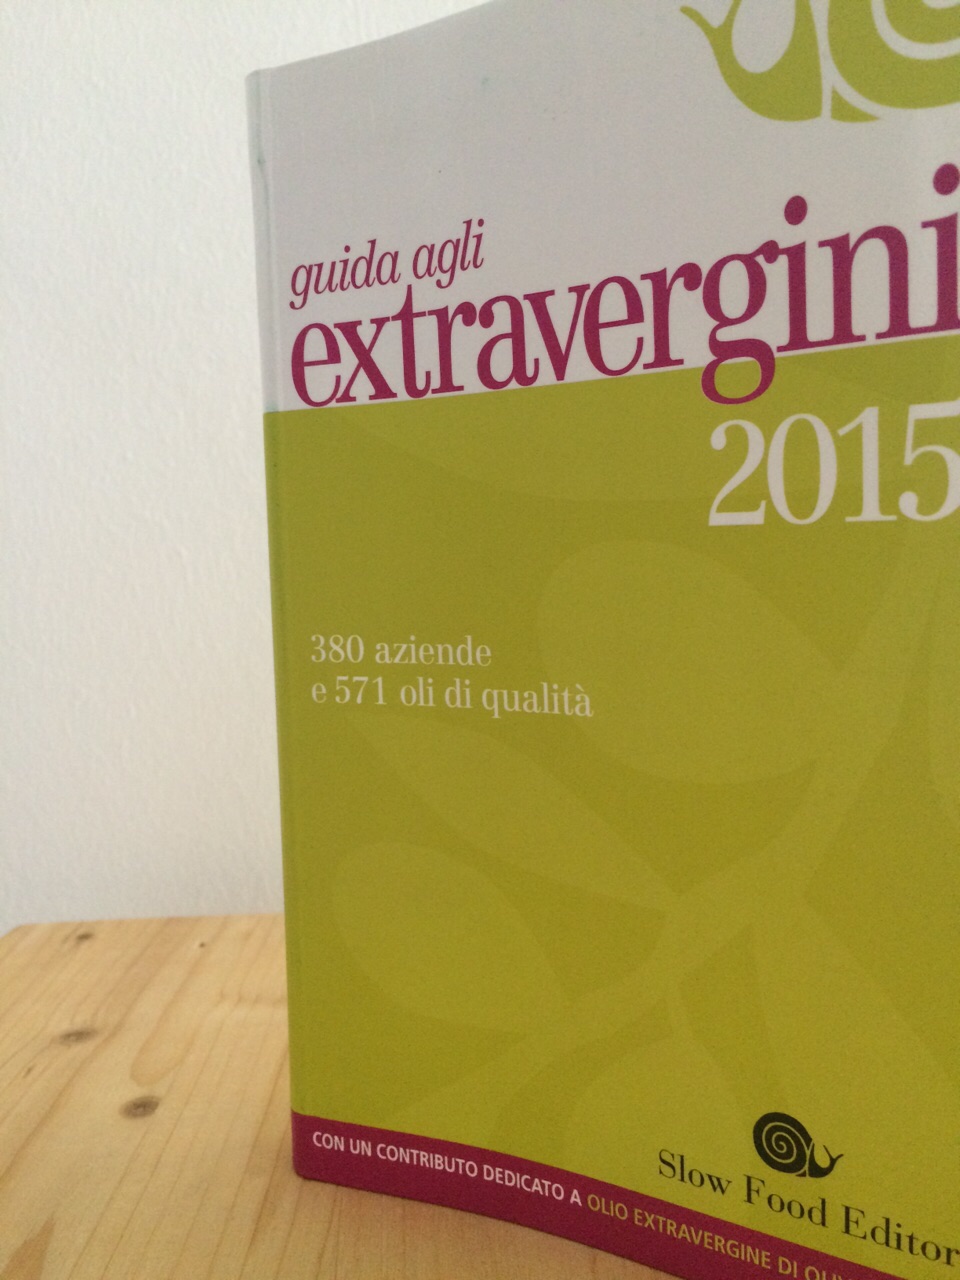 Guida agli extravergini 2015 - Sezione Puglia - Pietregiovani